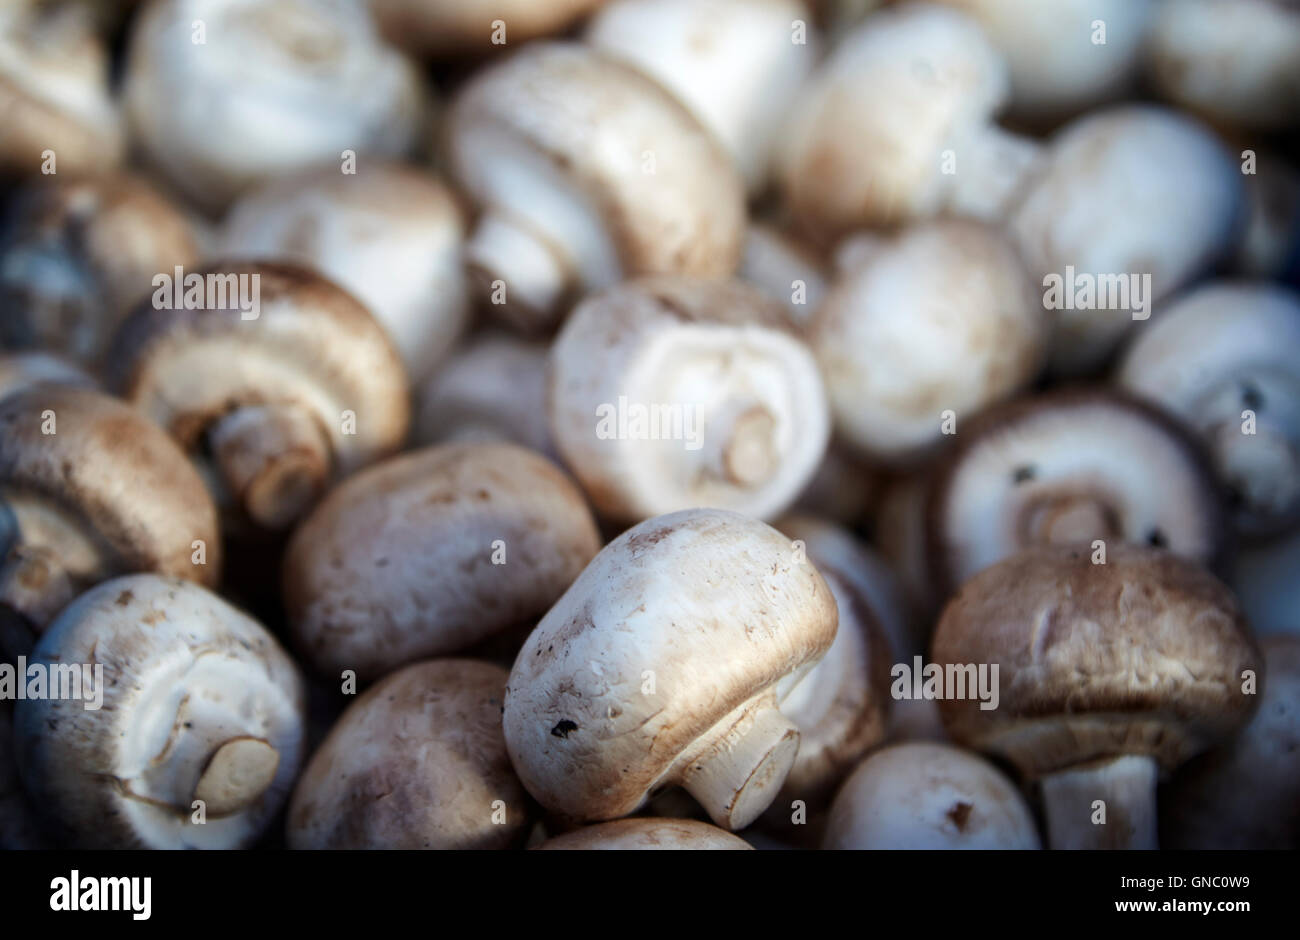 Fresco di funghi bianco sul display un fruttivendolo stallo alimentari nel Regno Unito Foto Stock